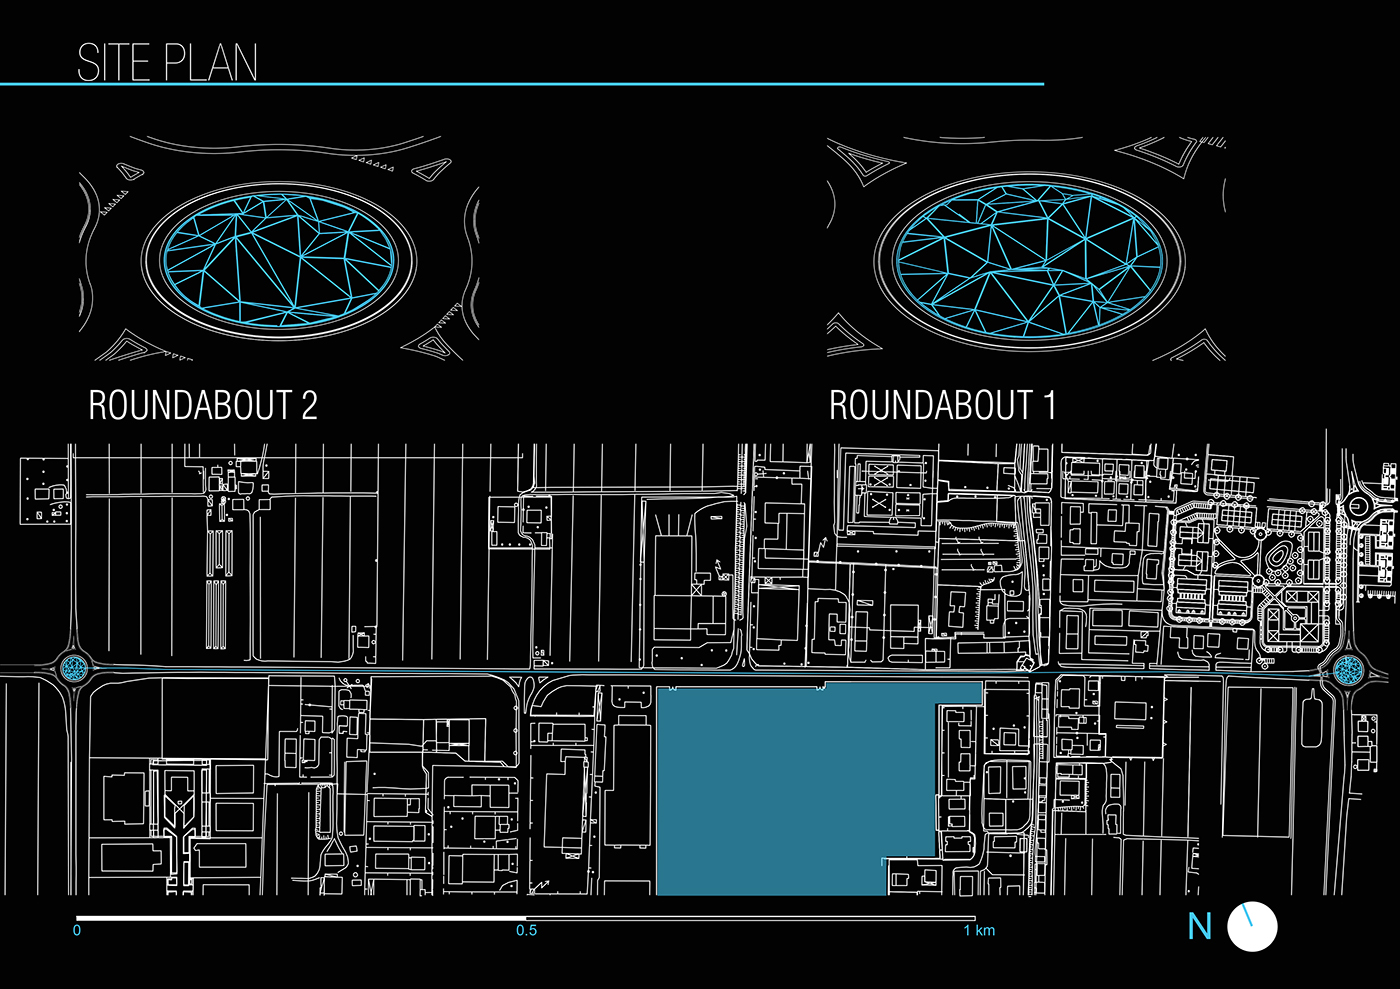 lamborghini architecture monument design Render Digital Art  car design futuristic urbanism  